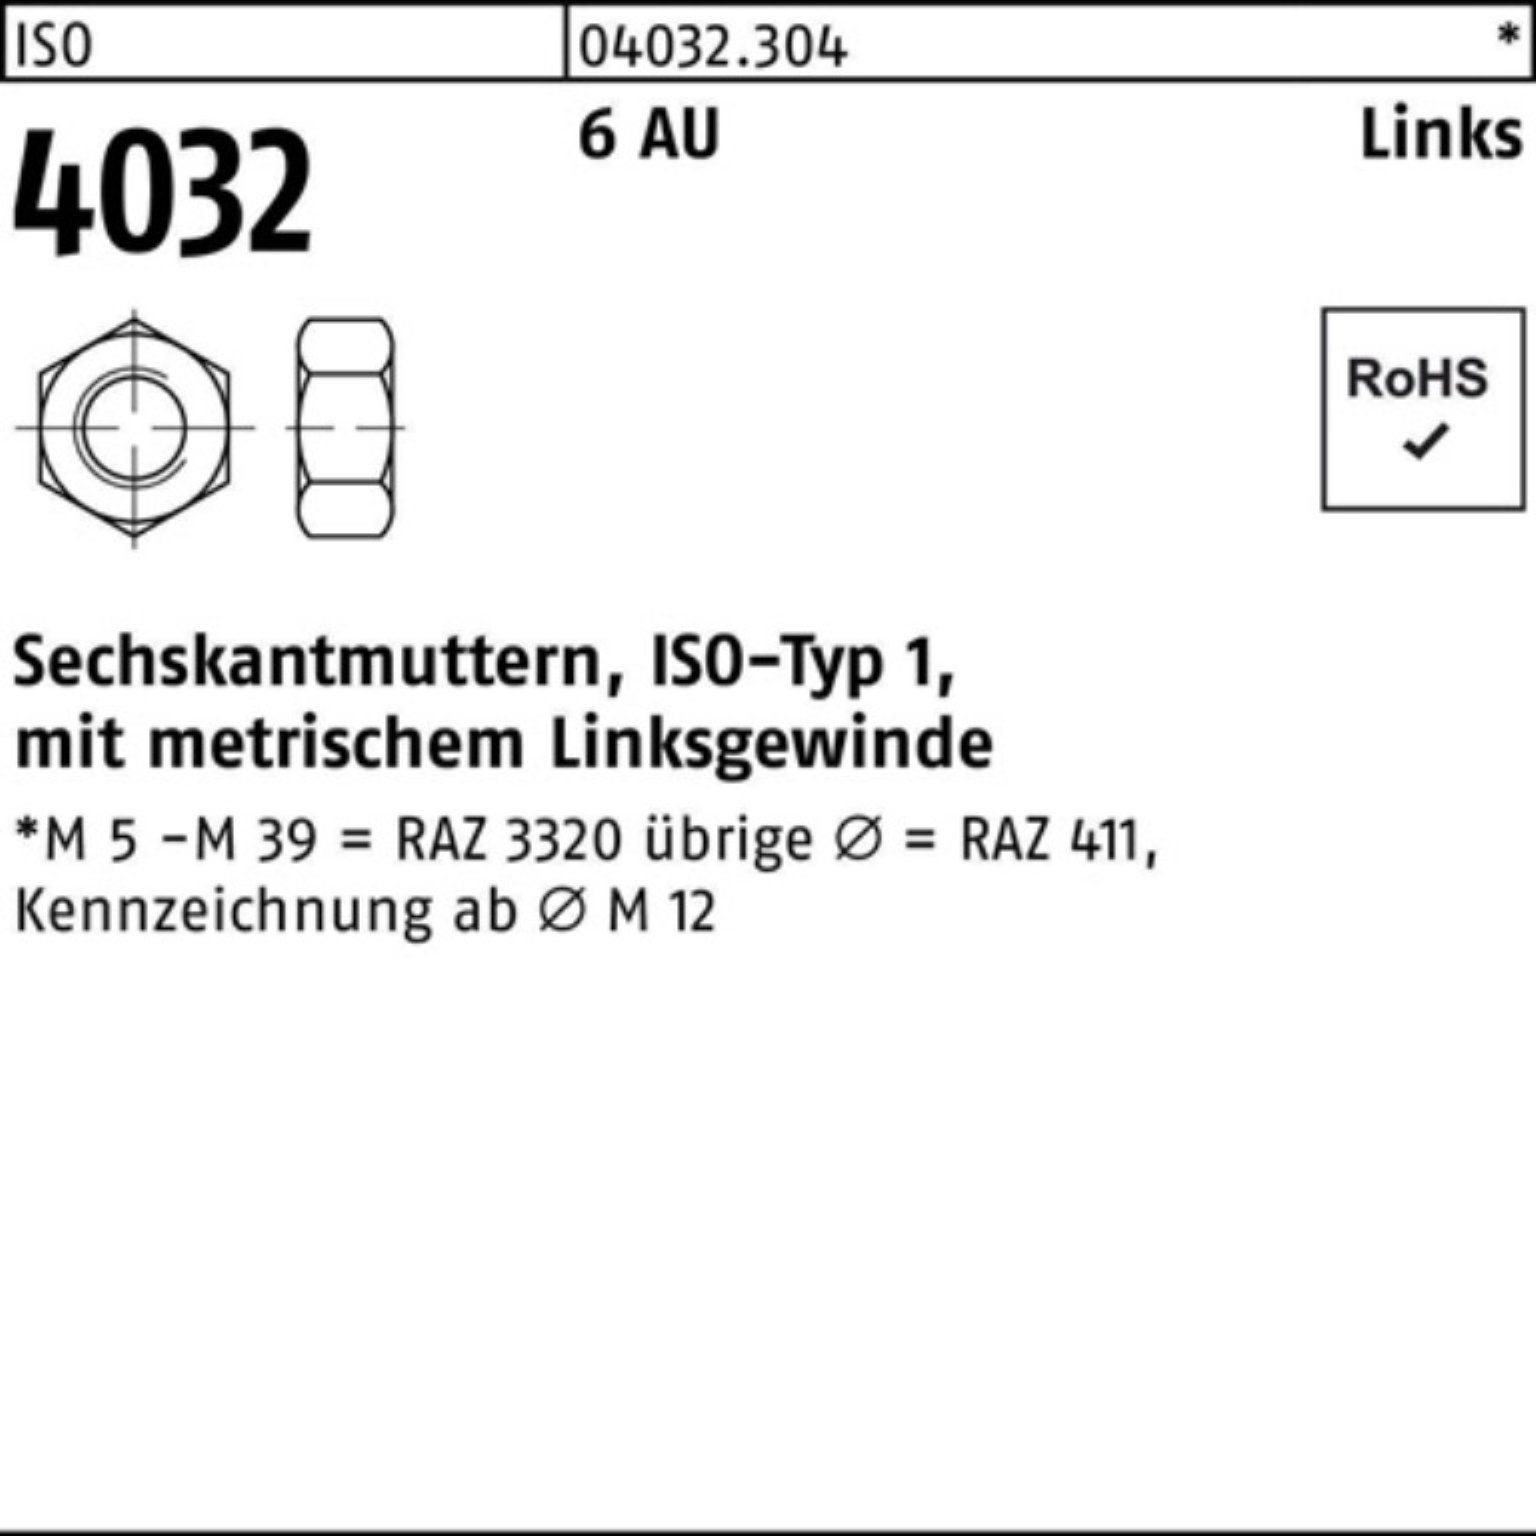 Muttern Stü 4032 ISO links Bufab Pack M22 Automatenstahl Sechskantmutter 6 25 100er